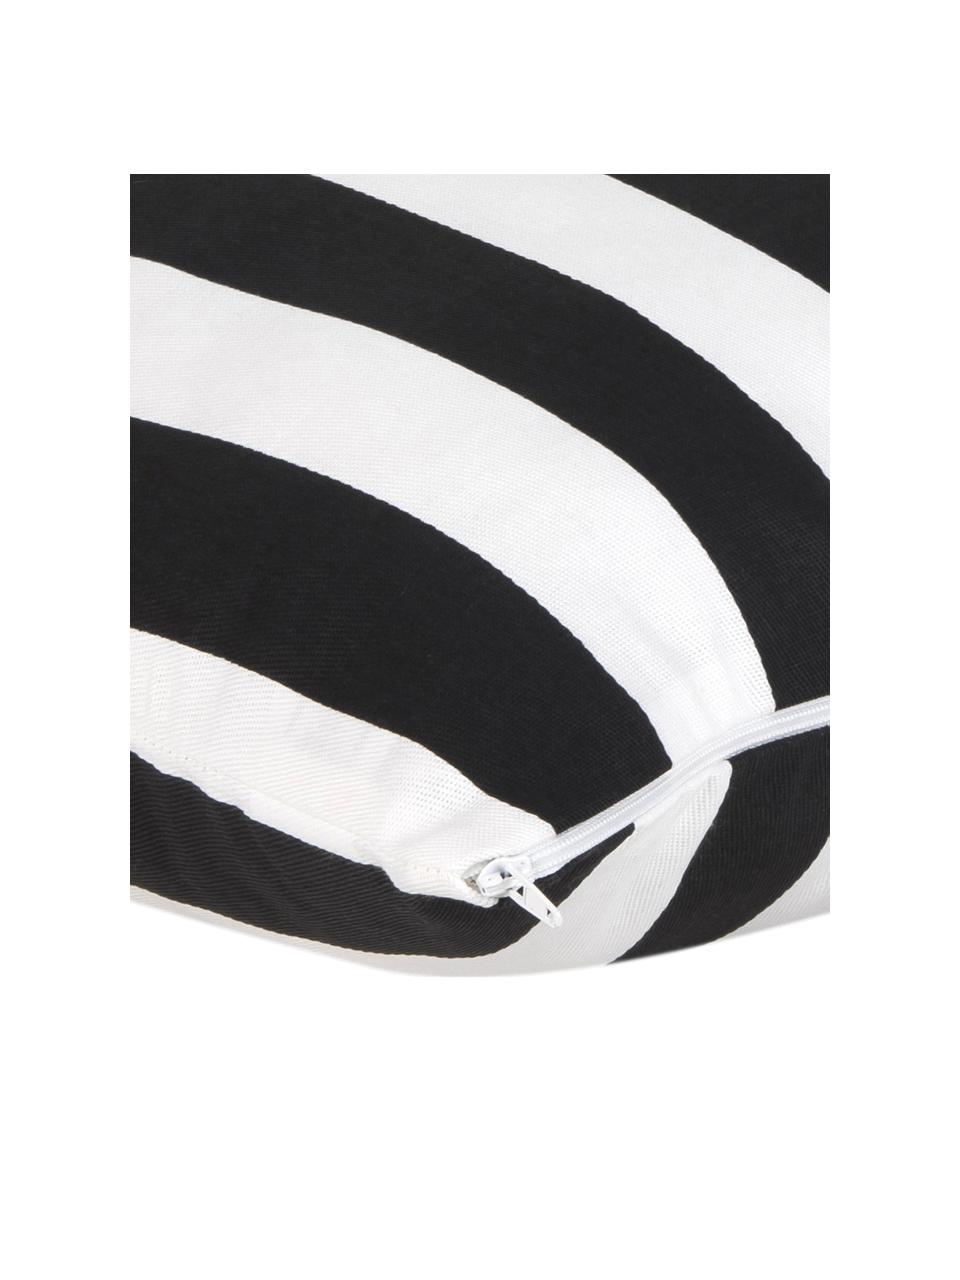 Gestreifte Kissenhülle Timon in Schwarz/Weiß, 100% Baumwolle, Schwarz, Weiß, 40 x 40 cm